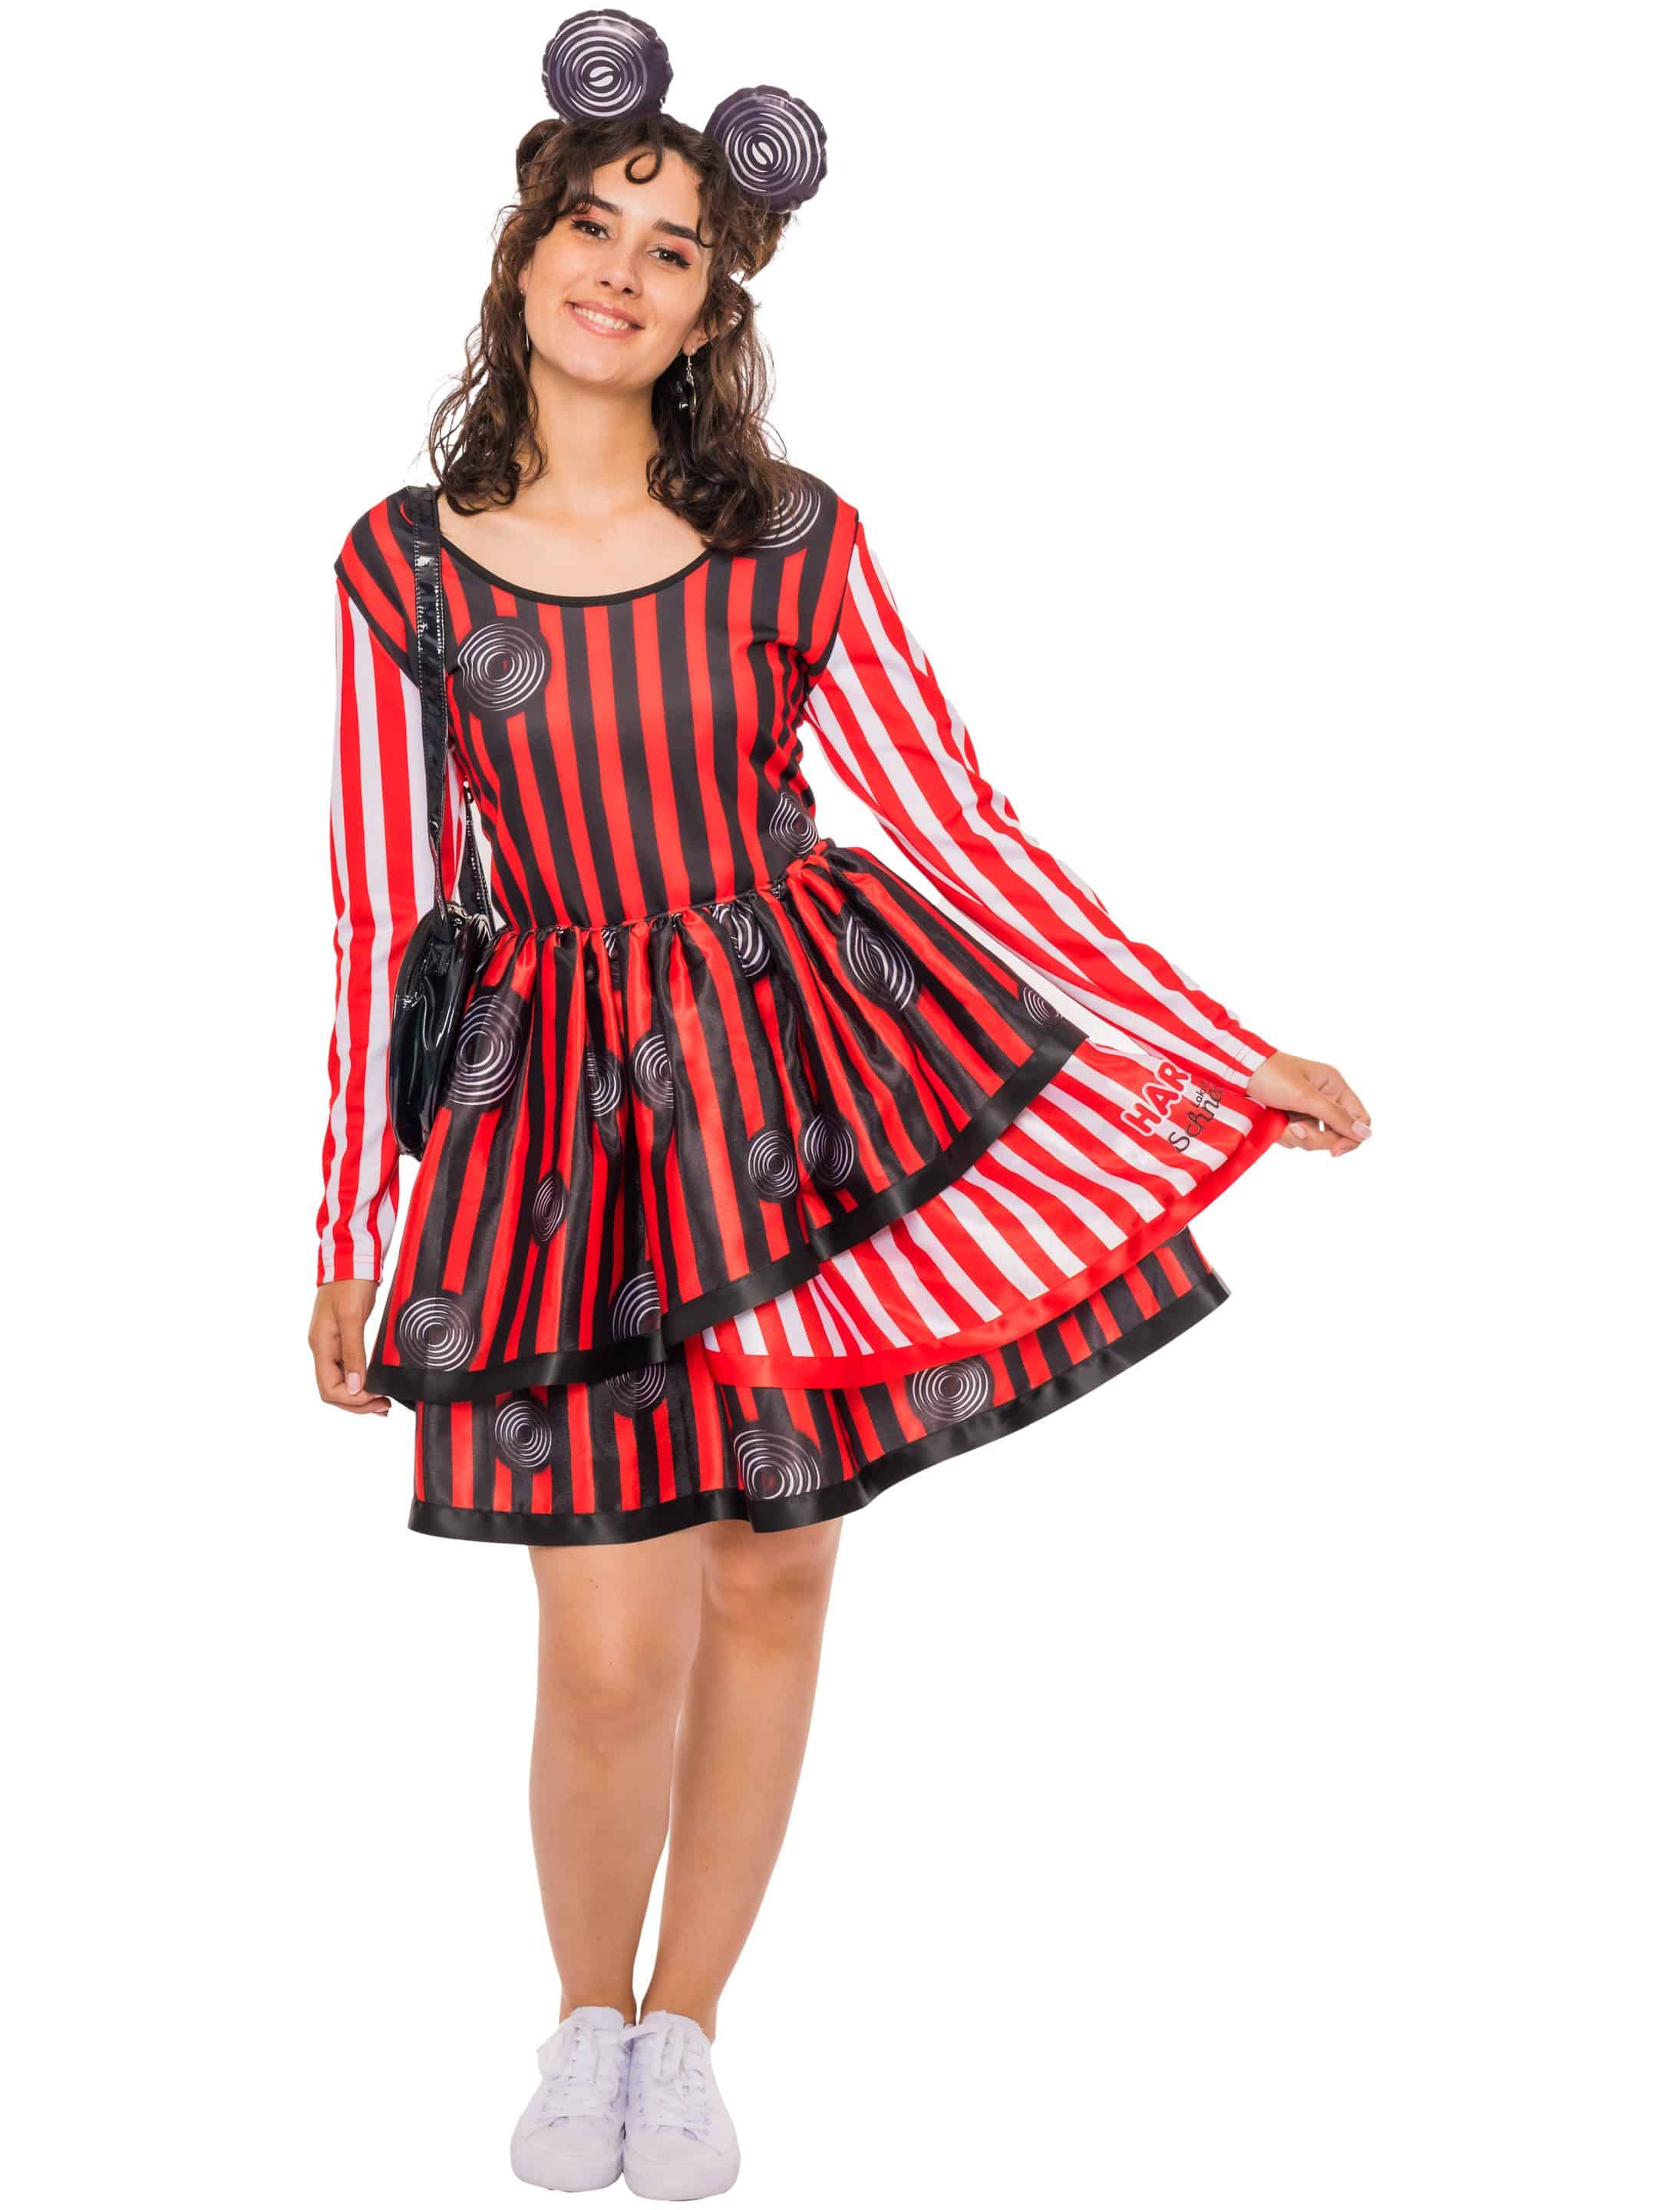 Kleid HARIBO Lakritz Schnecken Damen schwarz/weiß/rot XL